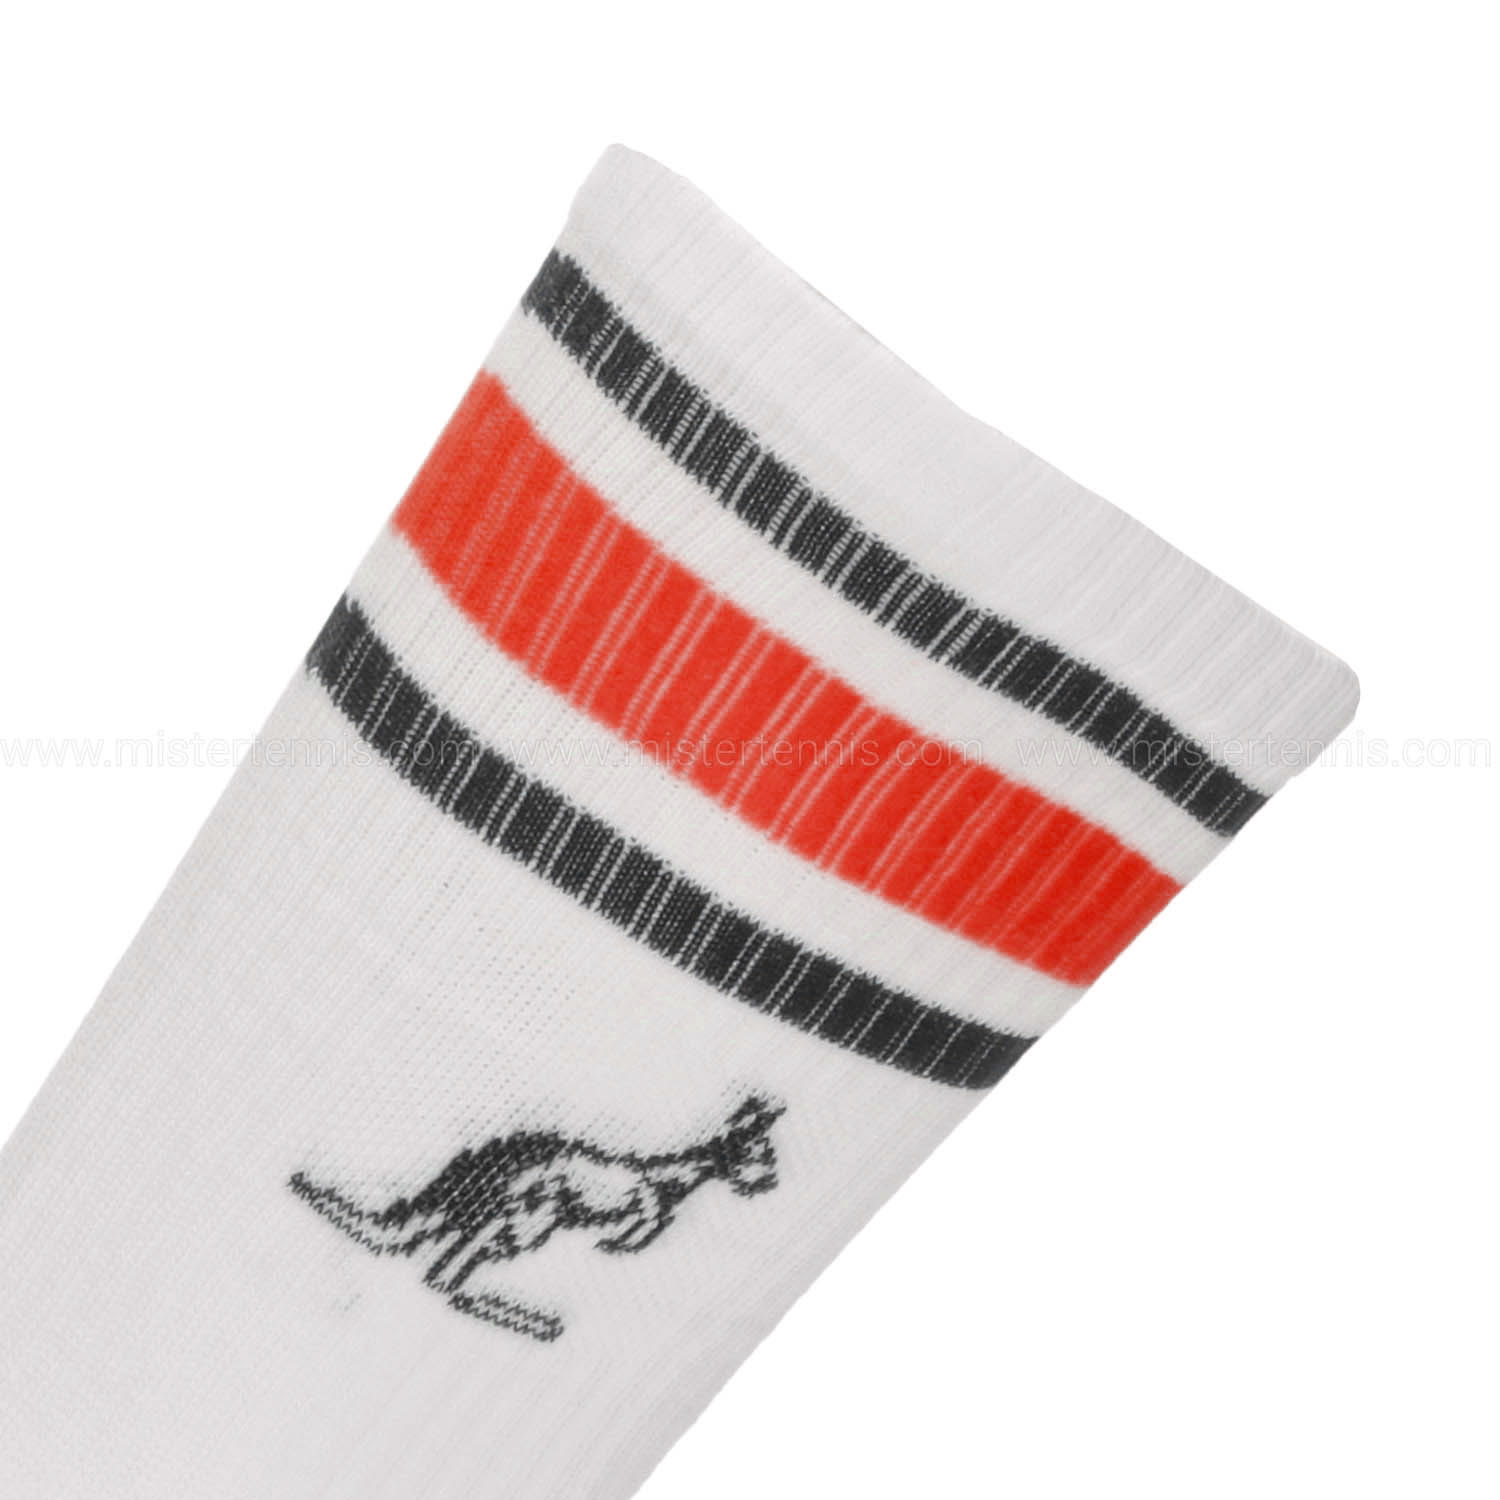 Australian Stripes Socks - Bianco/Rosso Vivo